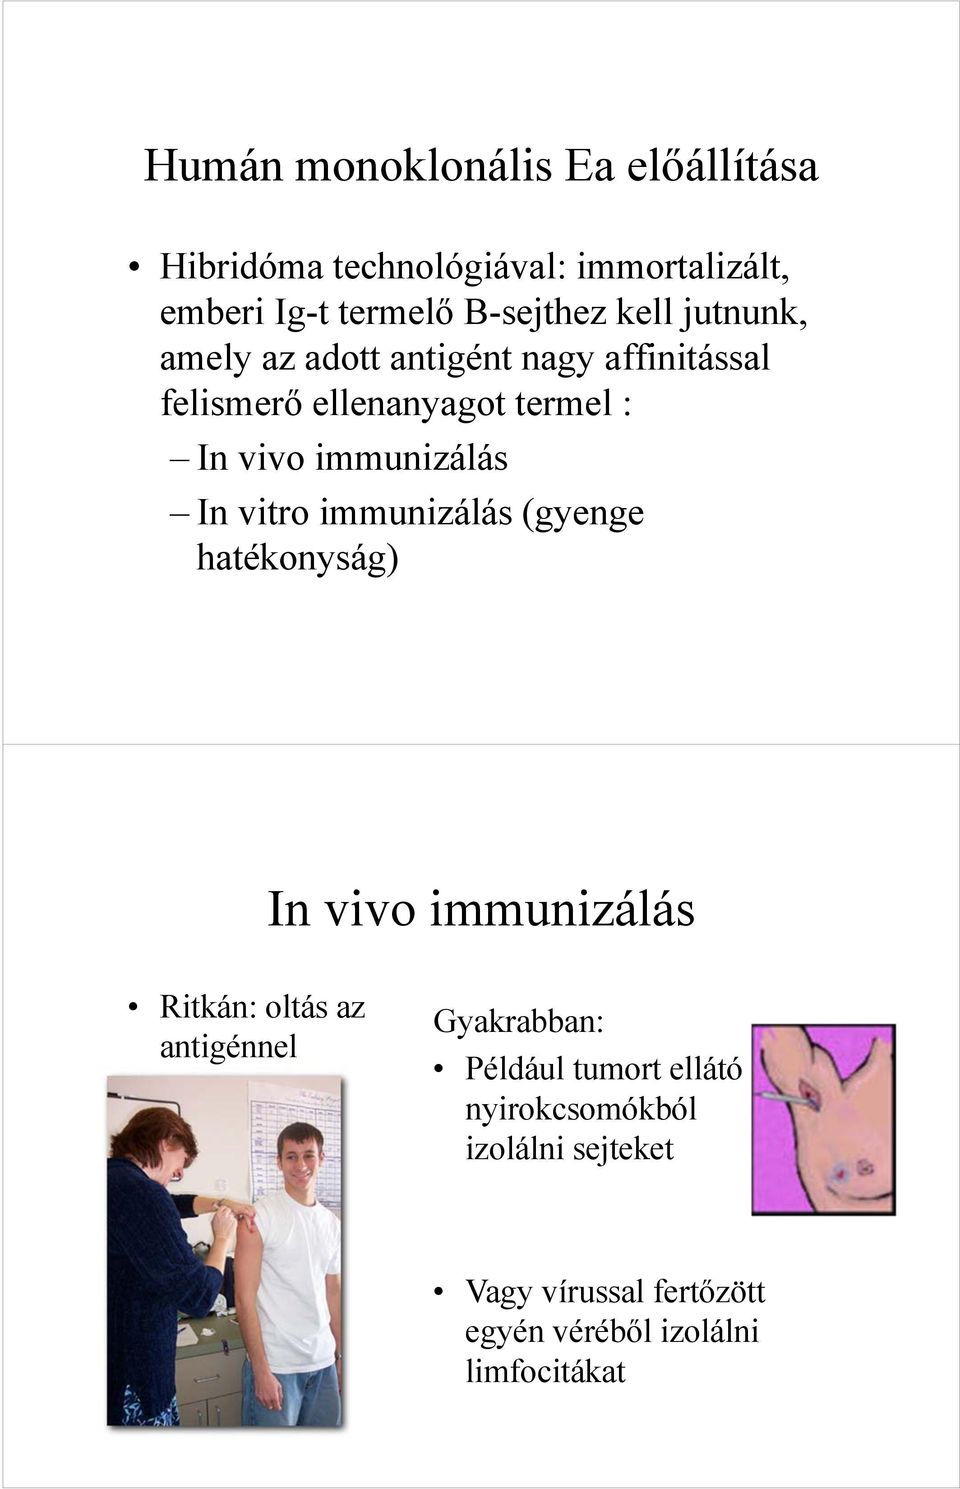 In vitro immunizálás (gyenge hatékonyság) In vivo immunizálás Ritkán: oltás az antigénnel Gyakrabban: